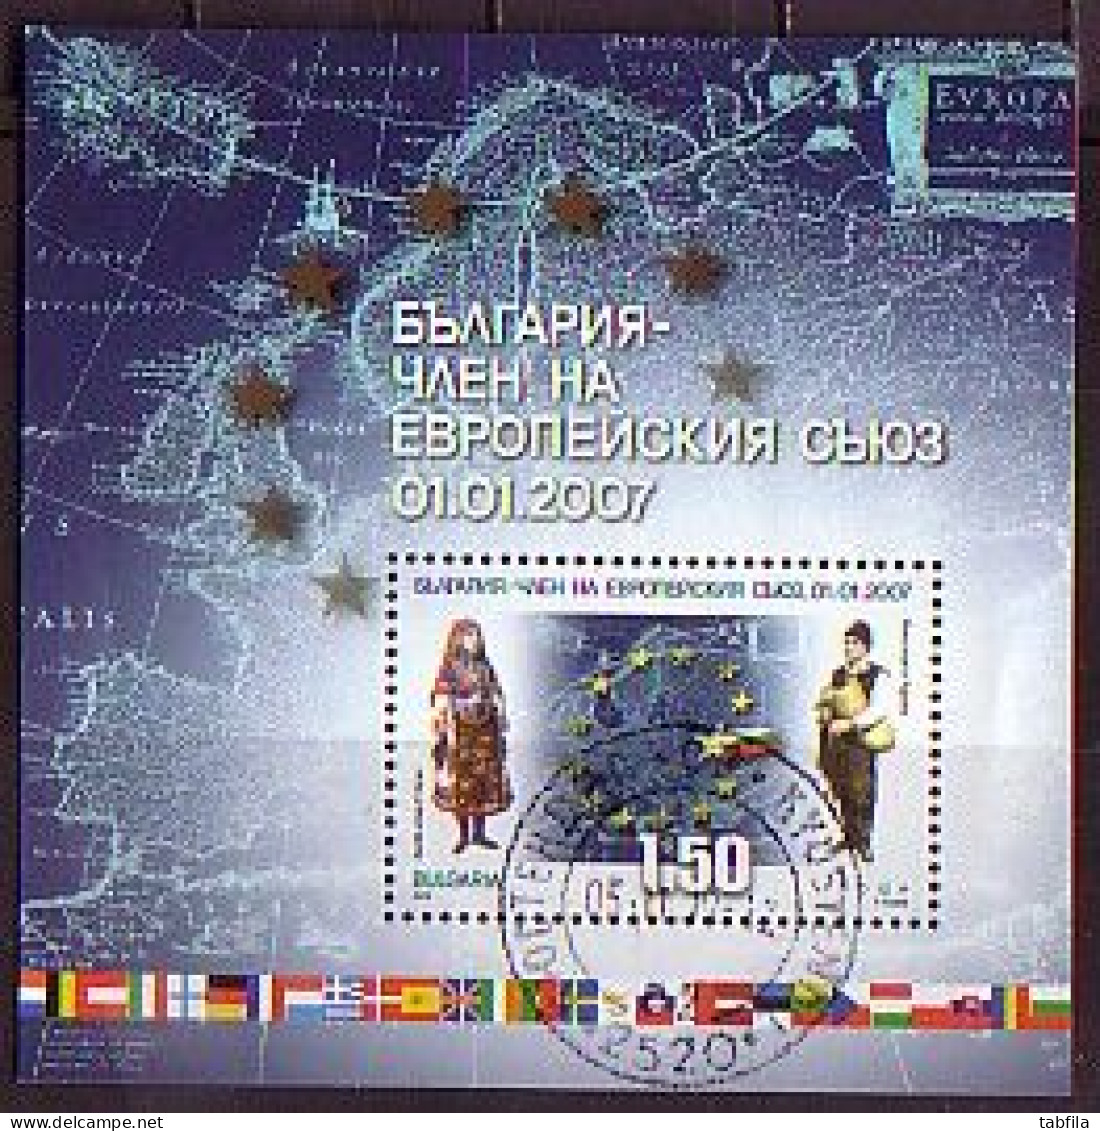 BULGARIA - 2007 - Bulgarie En Europe - Bl. Used - Used Stamps